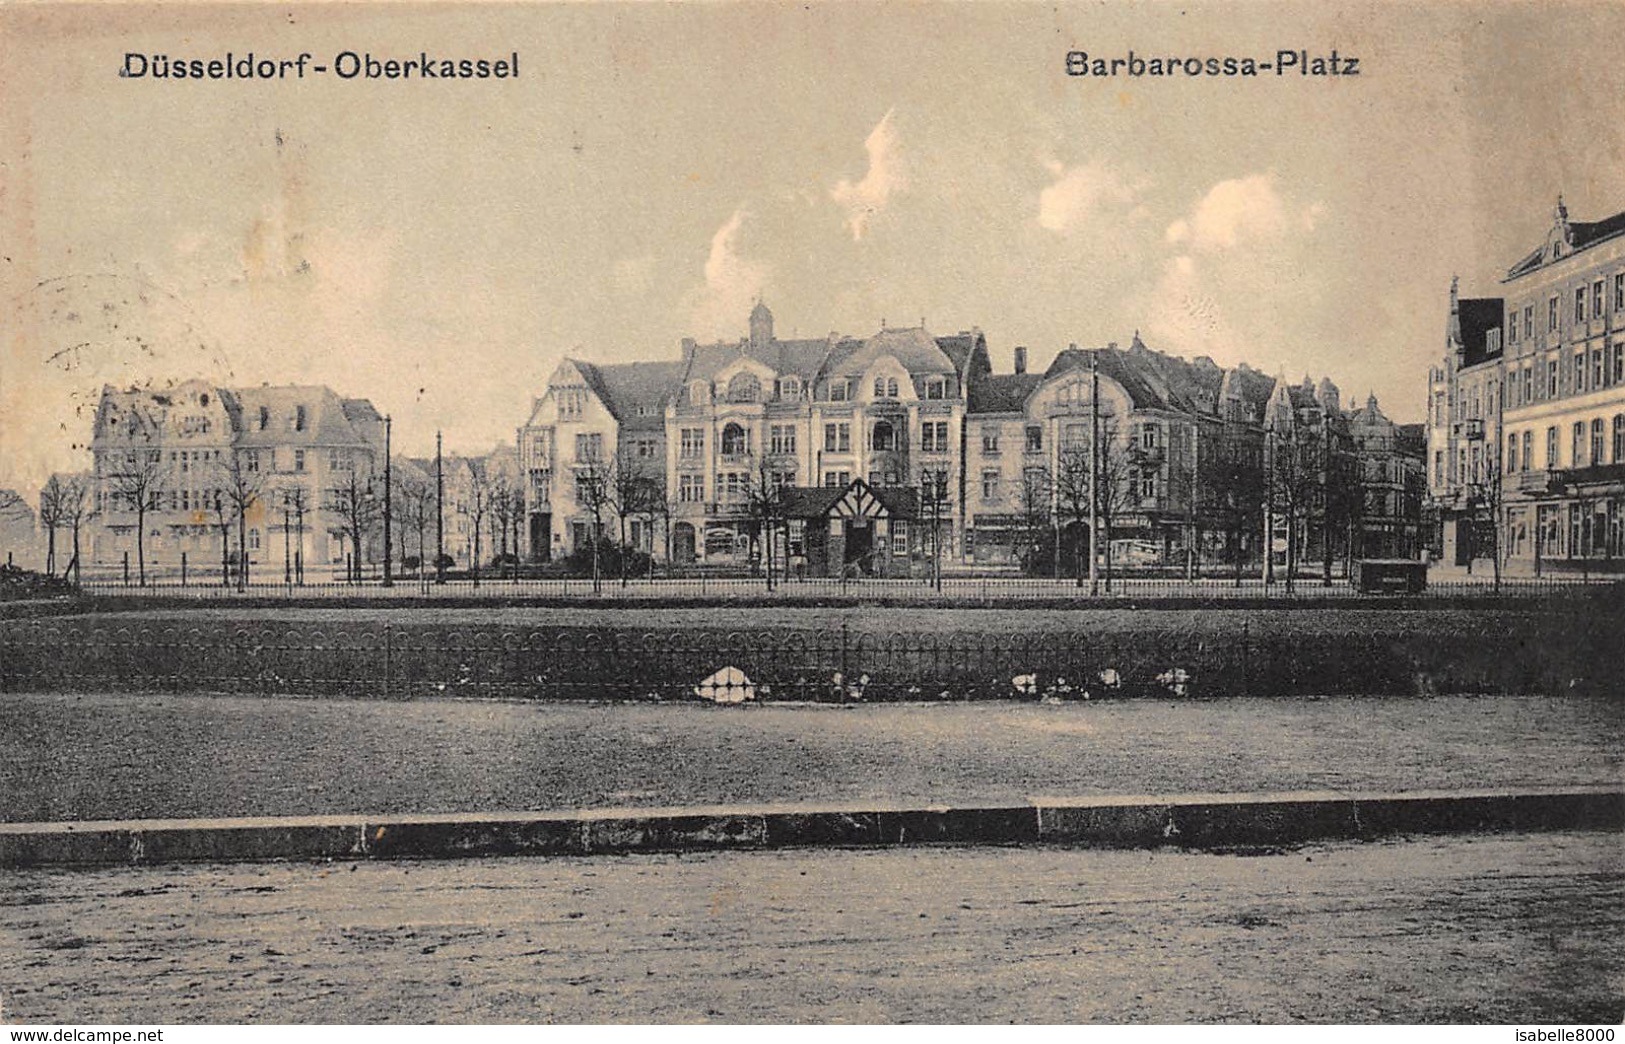 Düsseldorf Oberkassel   Barbarossa-platz           I 3302 - Duesseldorf